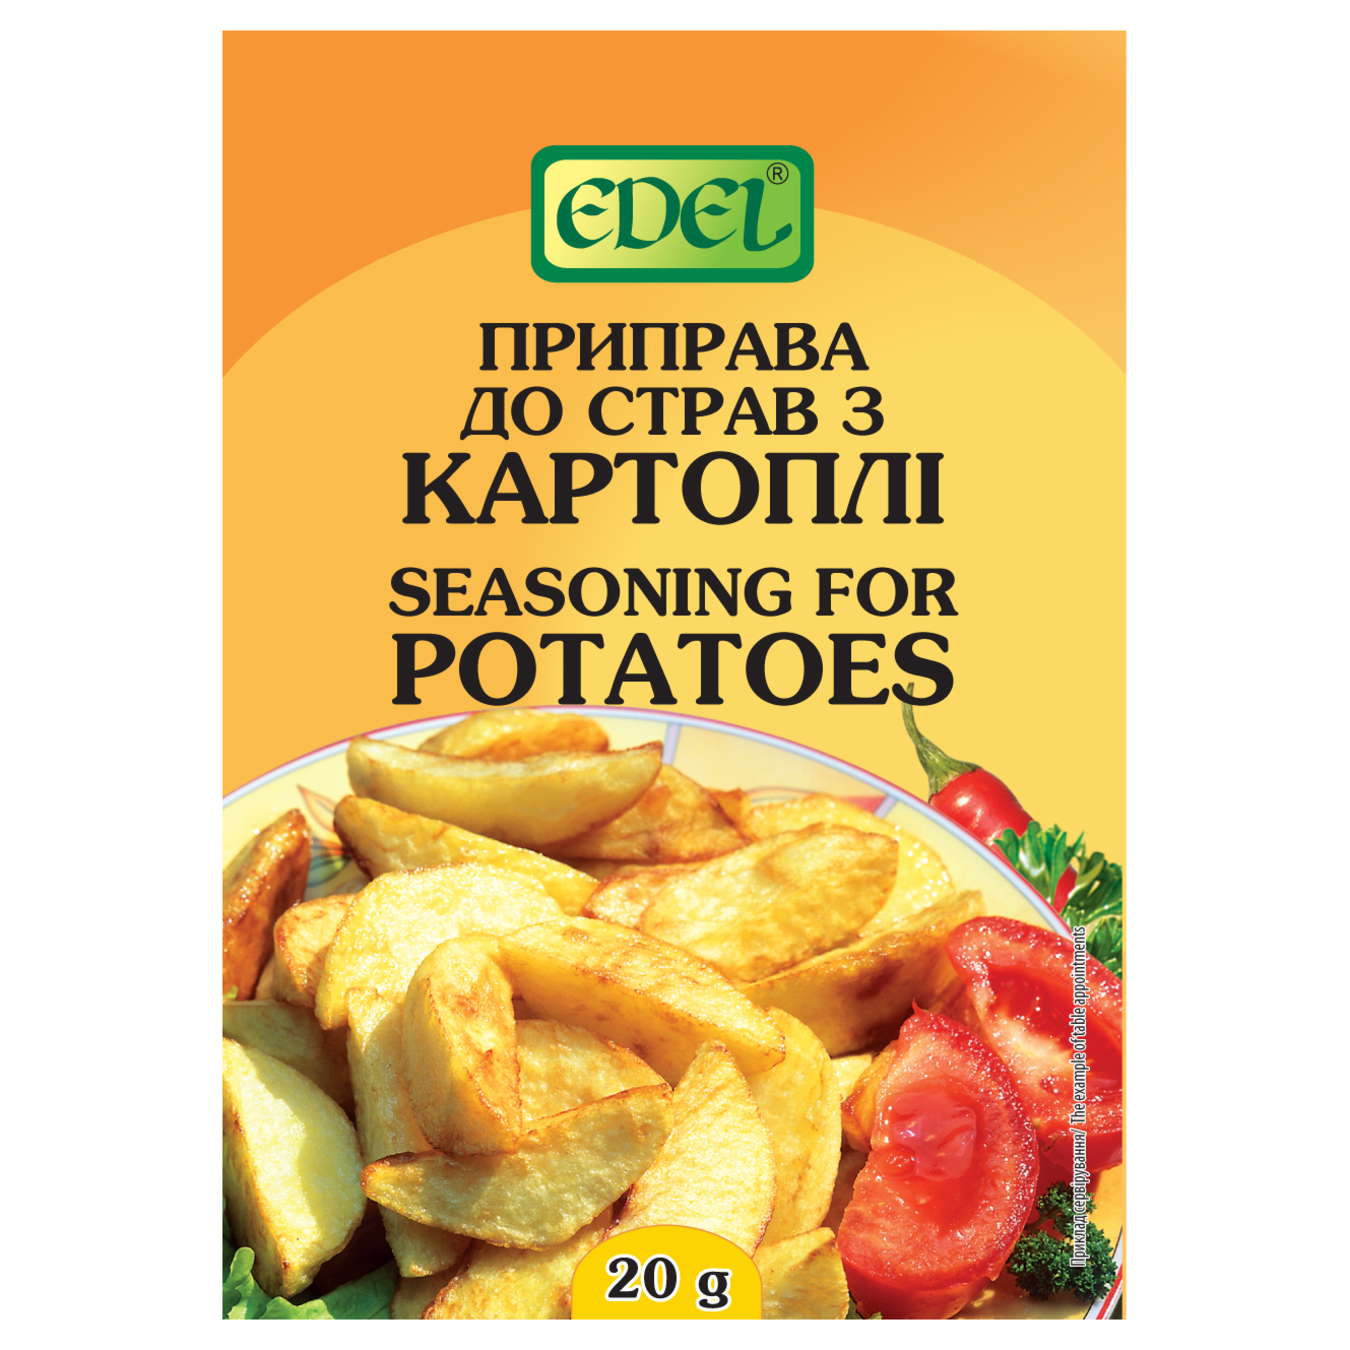 EDEL For Potato Spices 20g